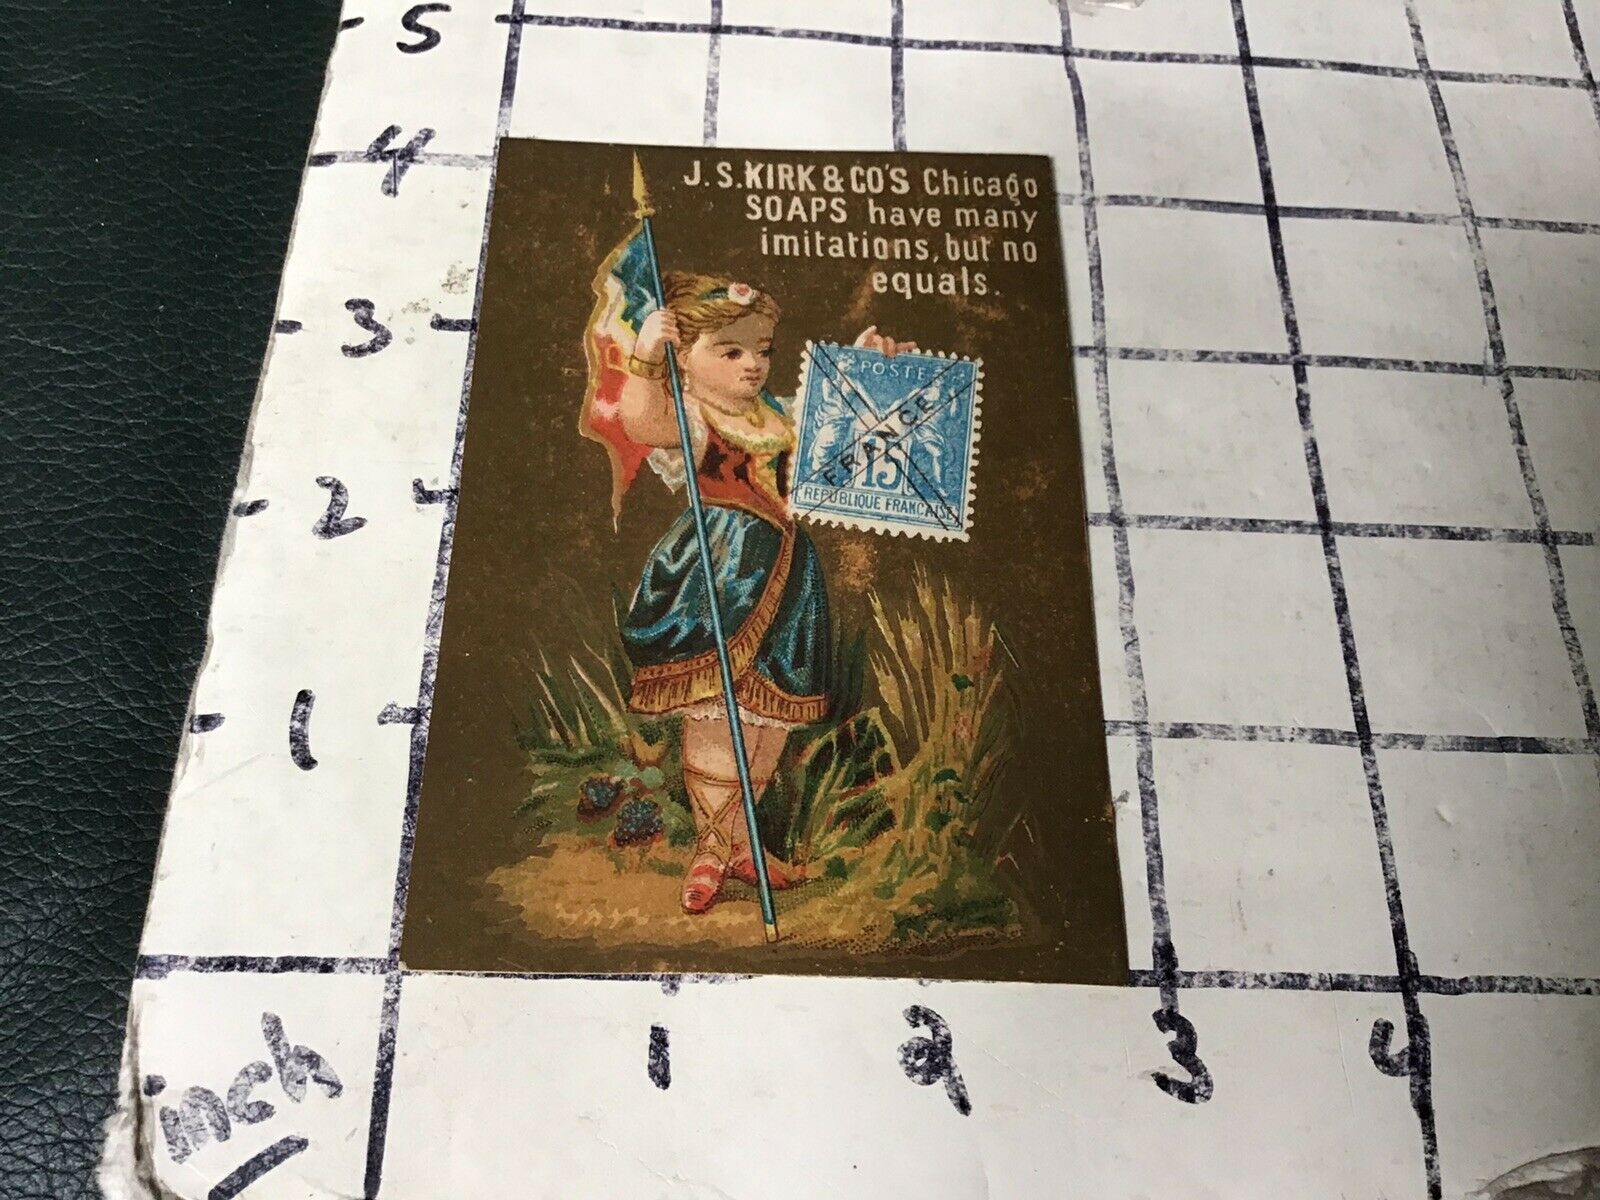 Original Vintage Trade Card: J S Kirk & Co's Standard Soap - France